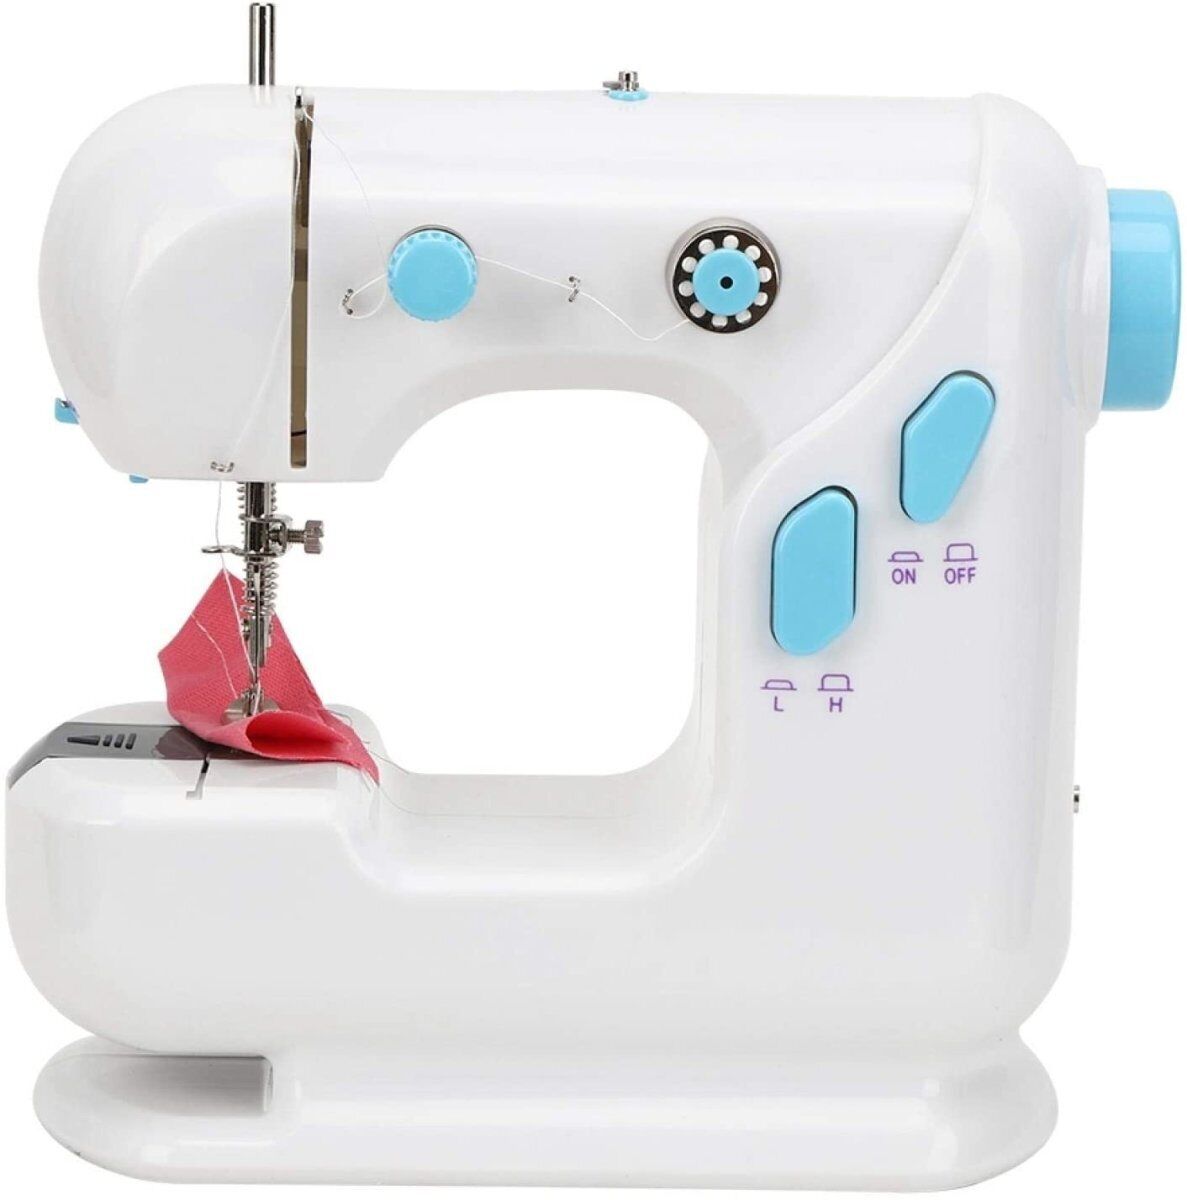 YFSM-306 Sewing Machine